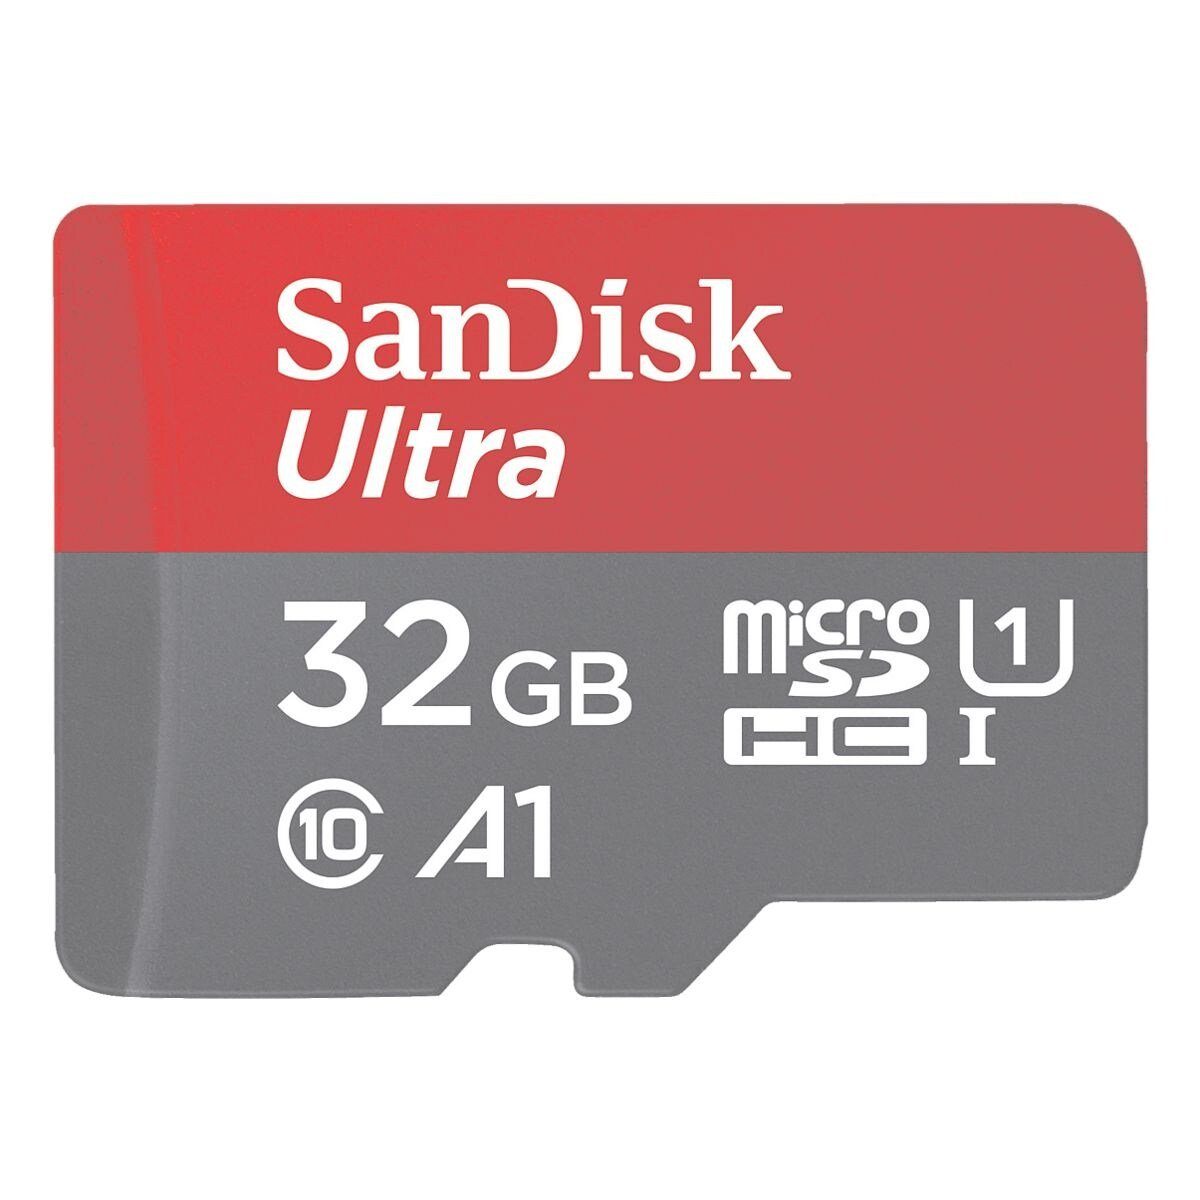 Sandisk Ultra Speicherkarte (32 GB, 120, 120 MB/s Lesegeschwindigkeit)